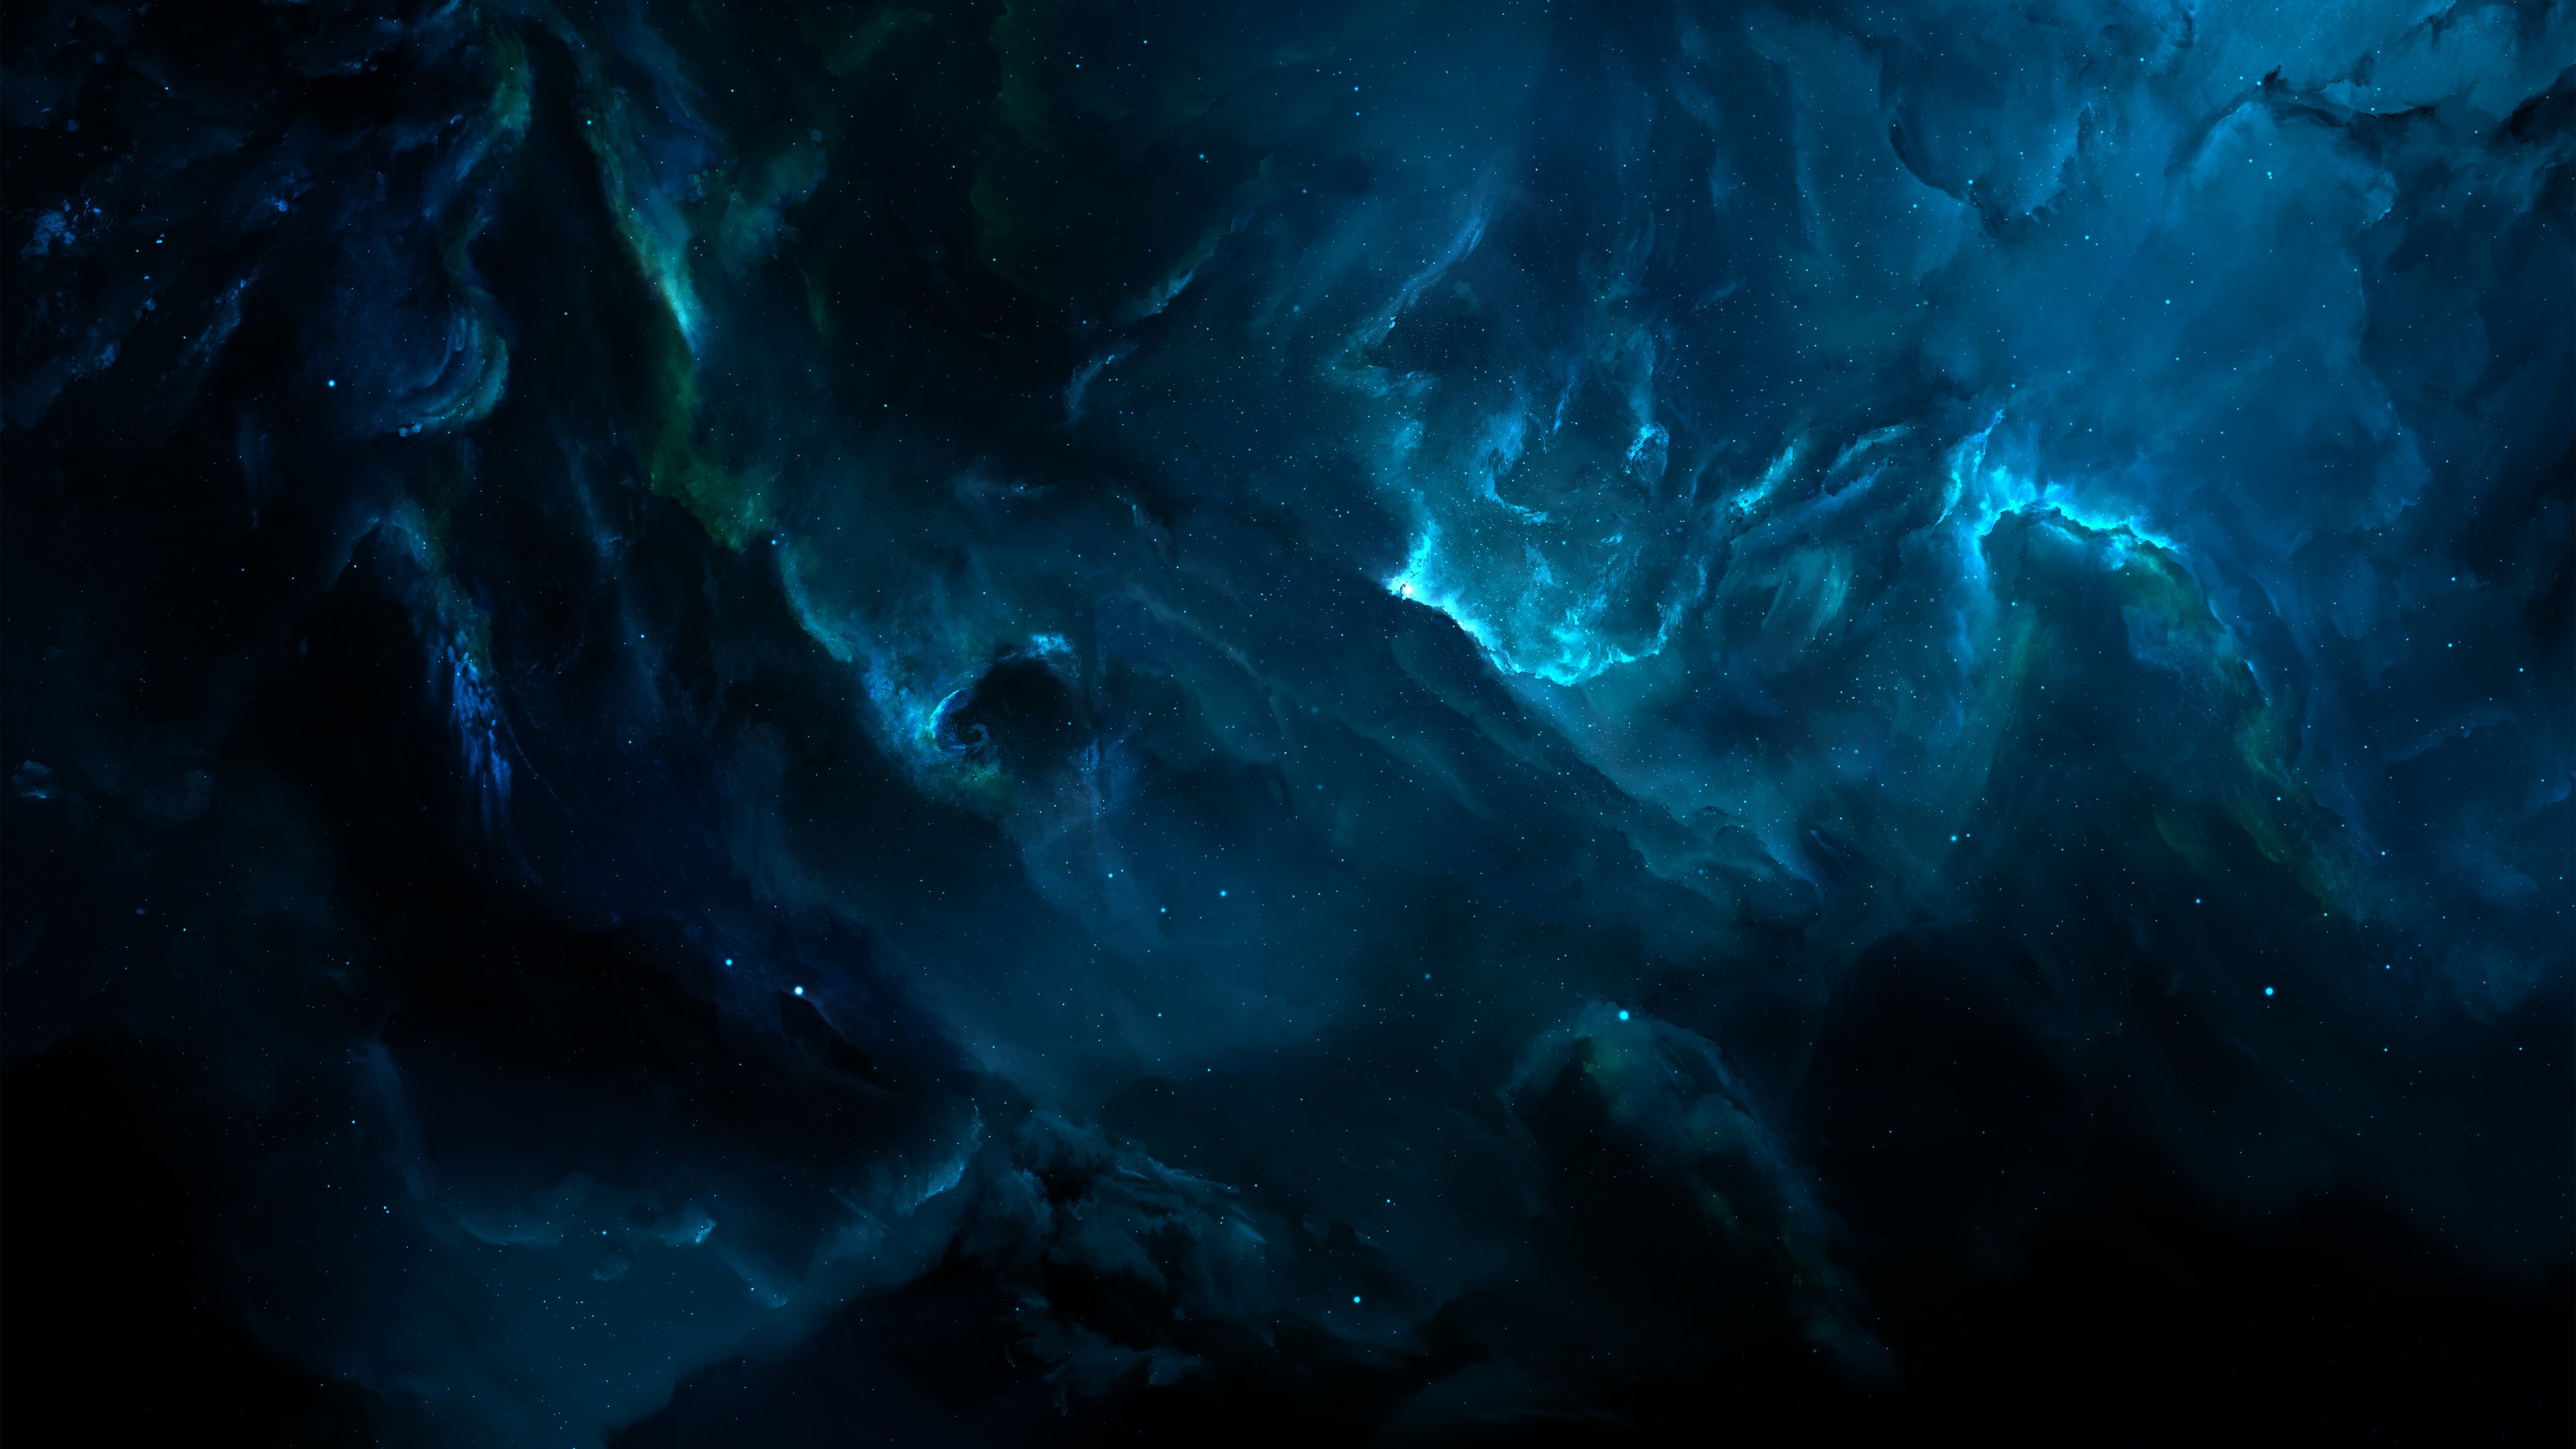 Atlantis Nebula Klyck HD Wallpaper 4k